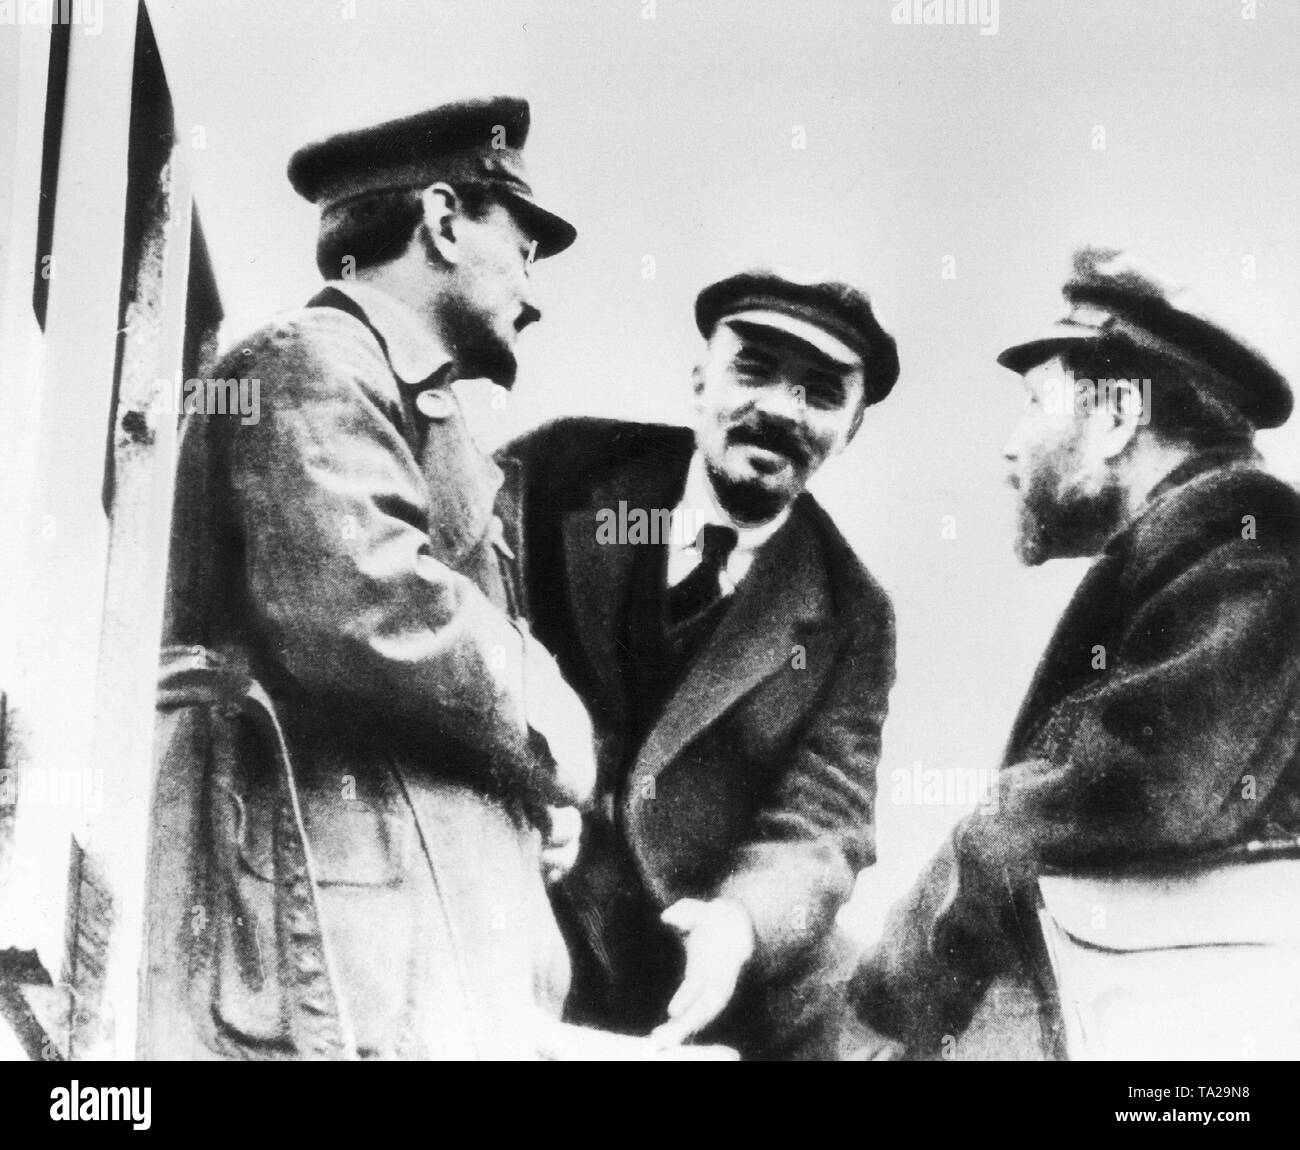 Da sinistra: Leon Trotsky, Vladimir Ilyich Lenin e Lev Kamenev in conversazione durante il Congresso di Petrograd, che ha portato alla formazione della Terza Internazionale comunista (Comintern). Foto Stock